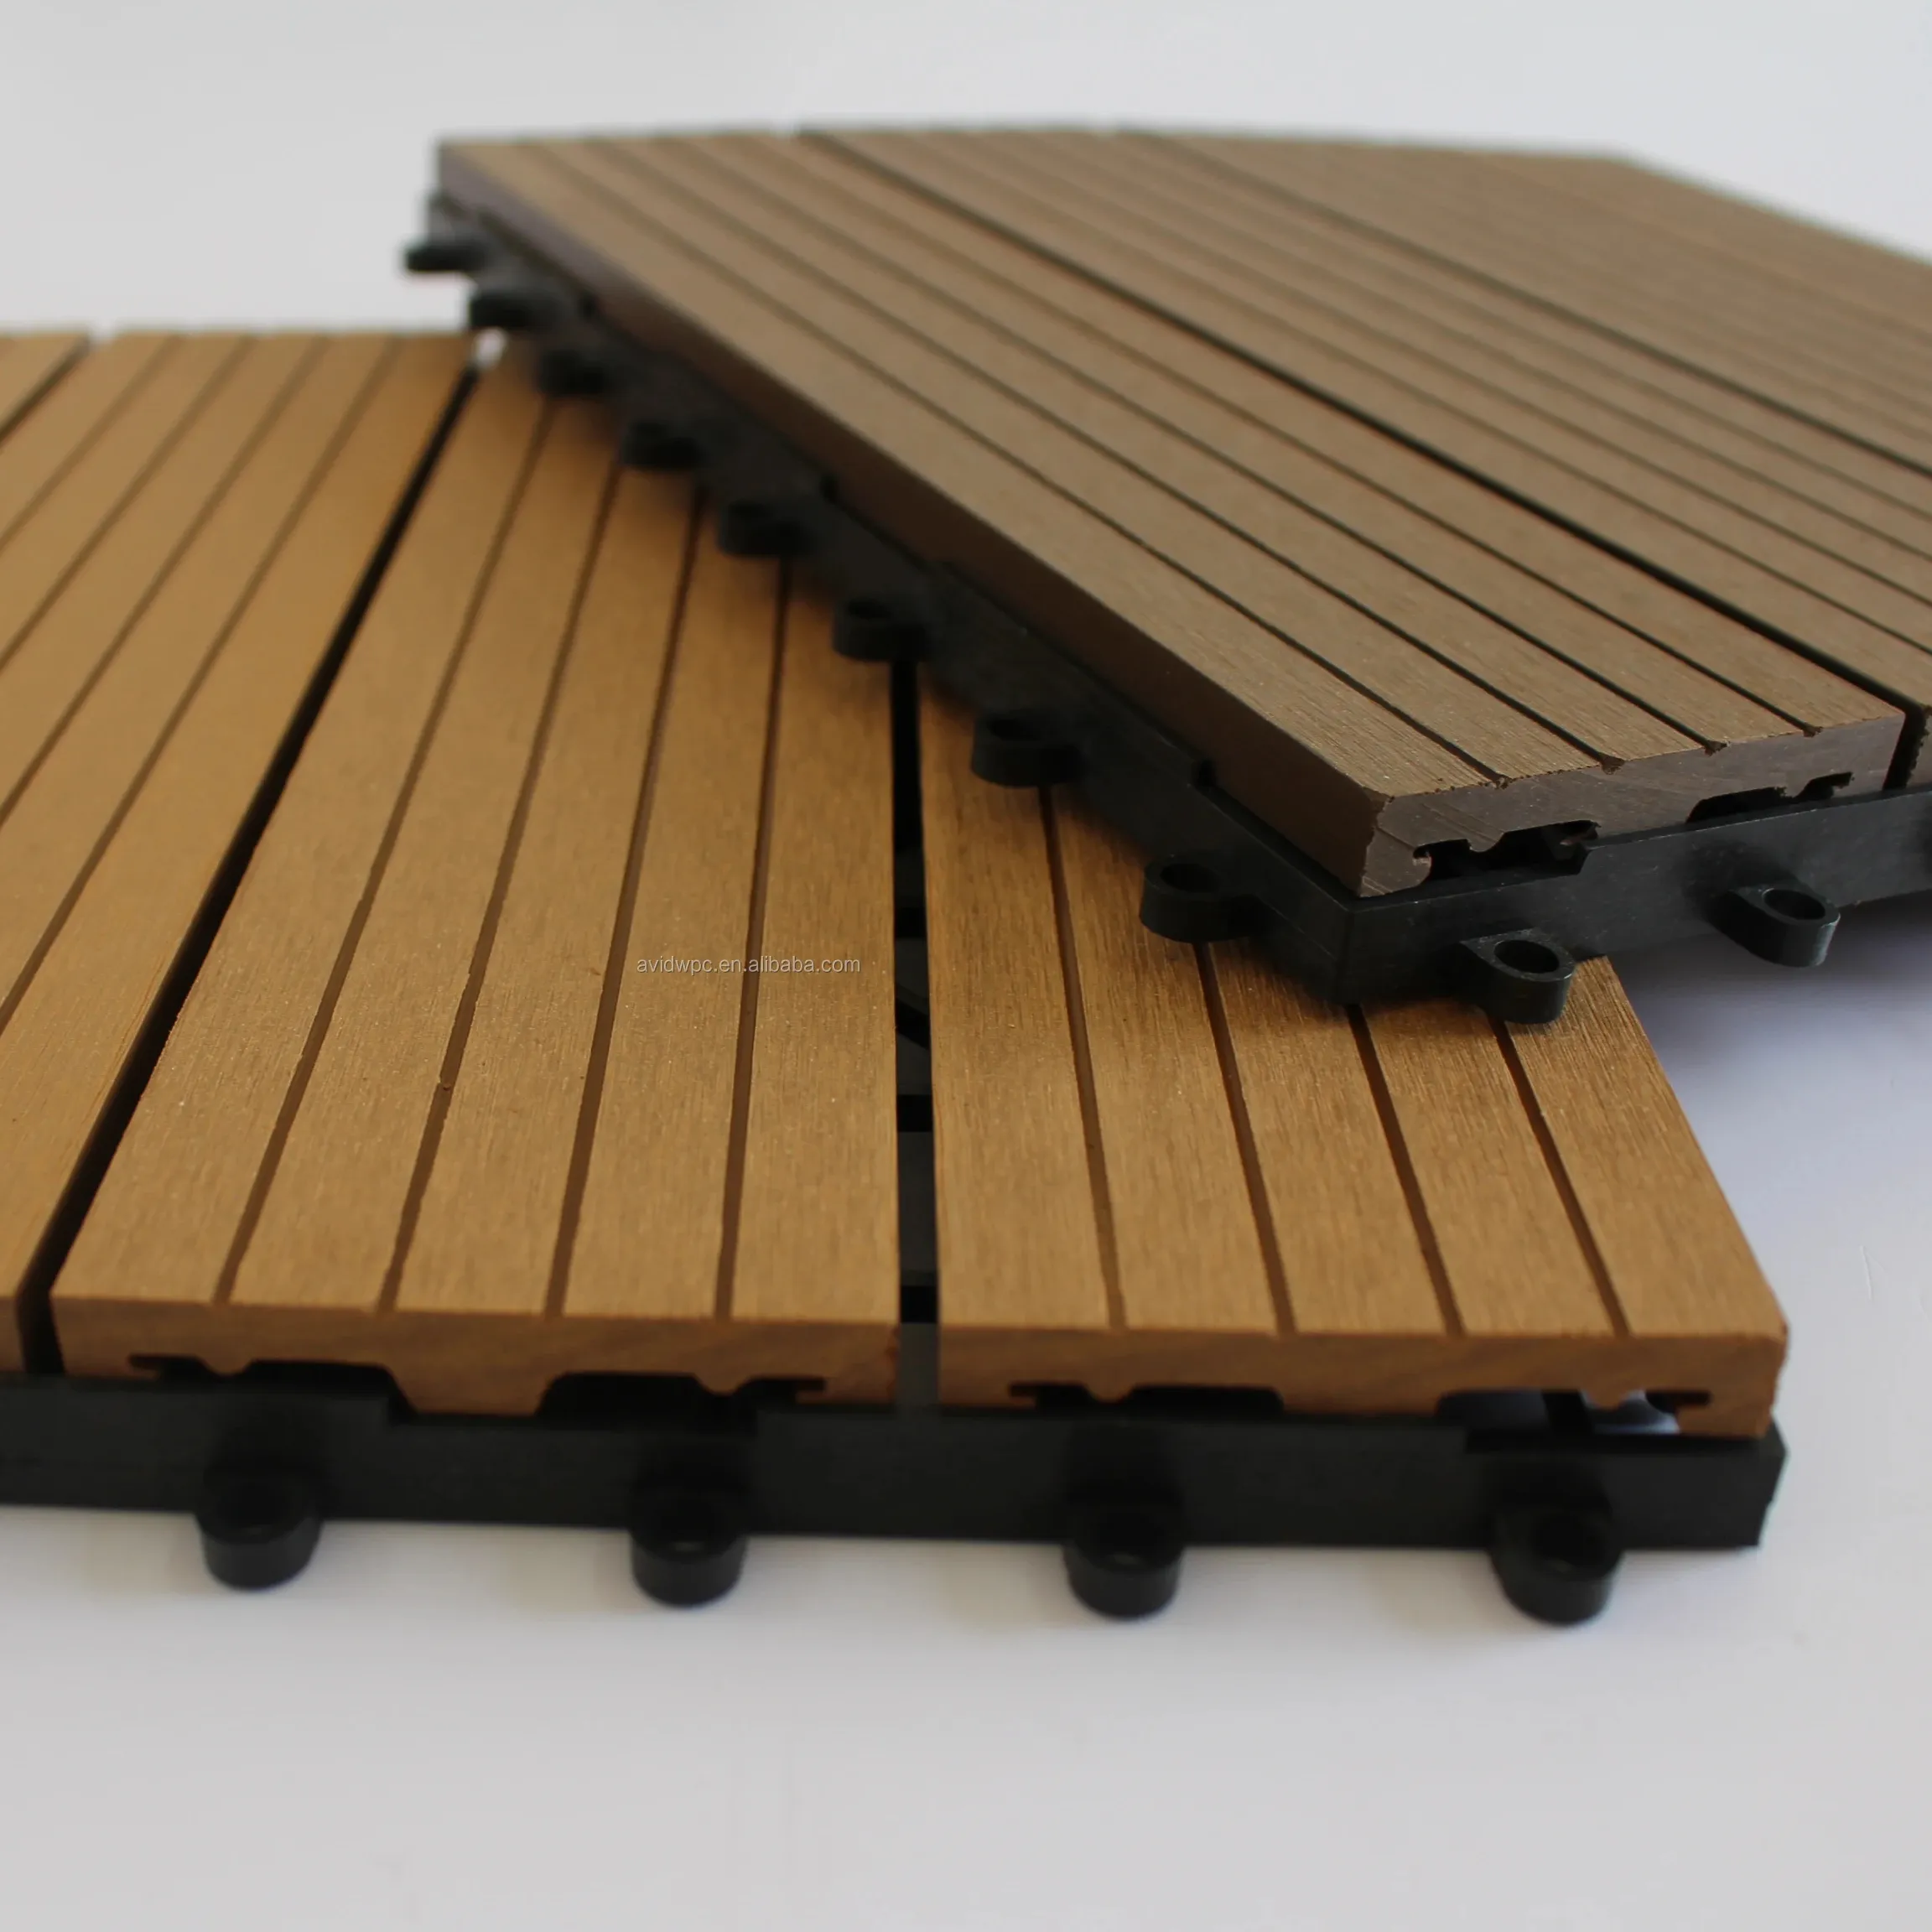 Nouveau matériau de construction facile à installer anti-uv imperméable à l'eau carreaux de plancher pour terrasse extérieure